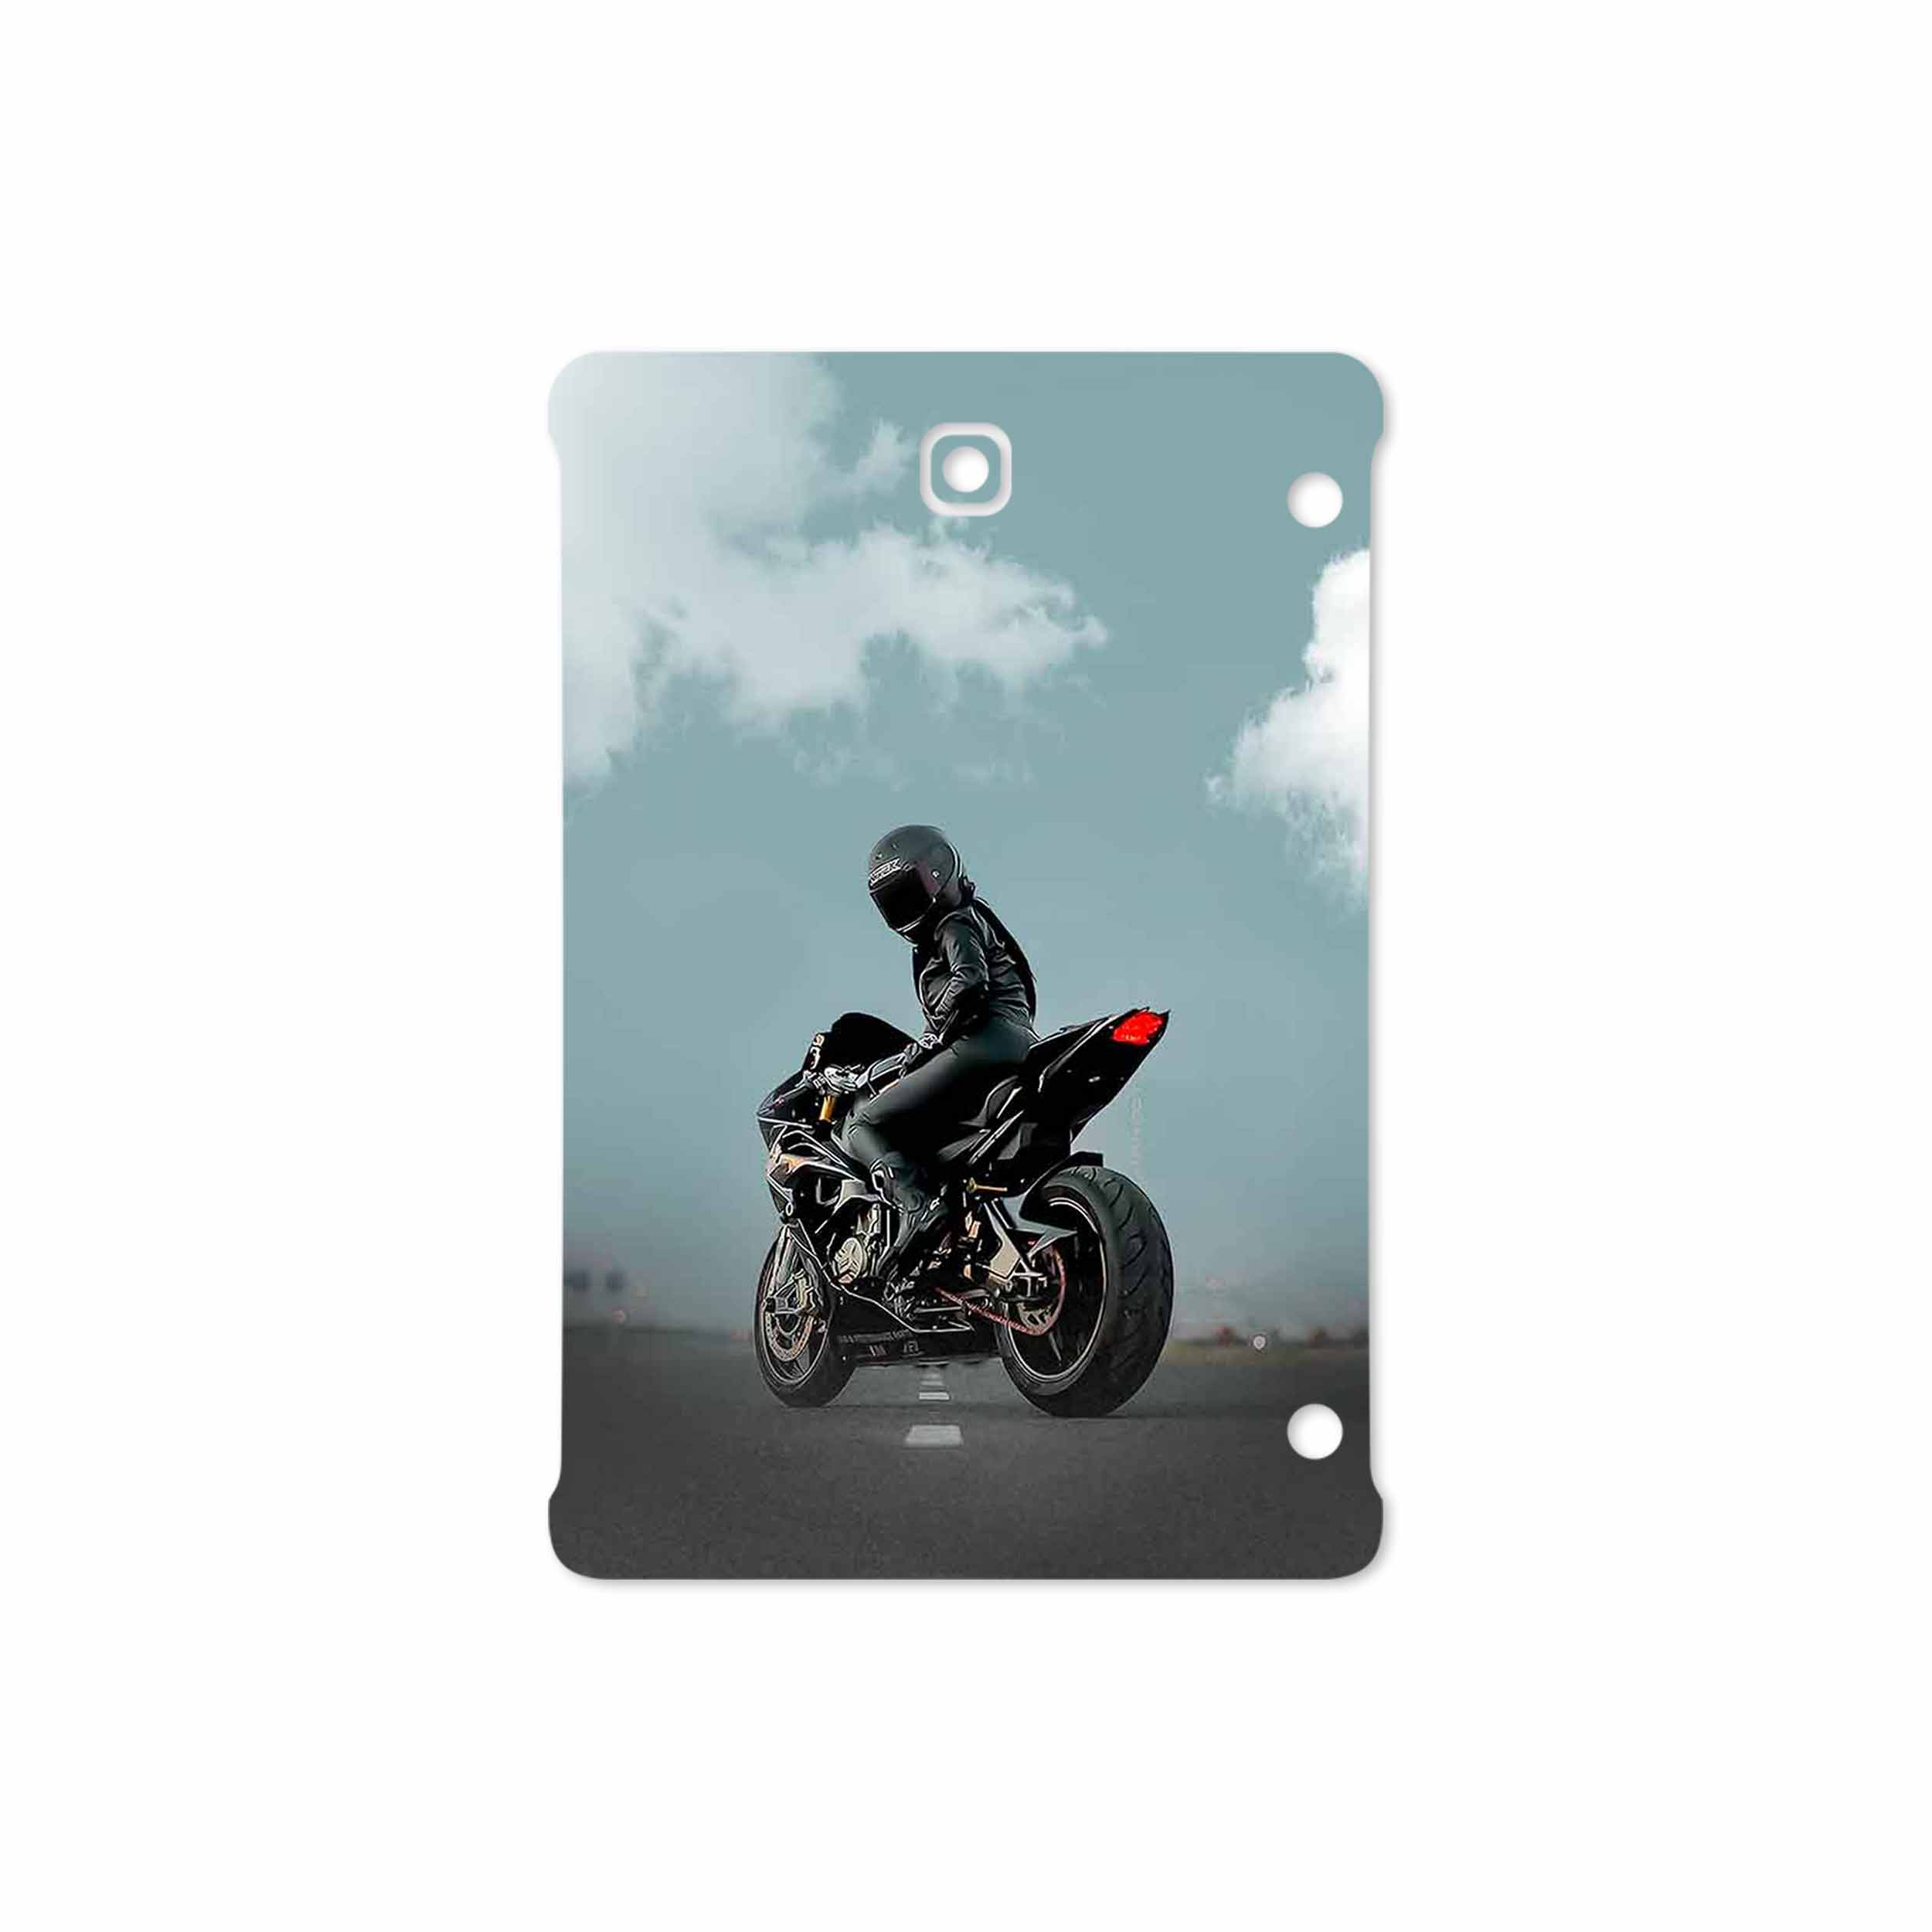 برچسب پوششی ماهوت مدل Motorcycling مناسب برای تبلت سامسونگ Galaxy Tab S2 8.0 2015 T710